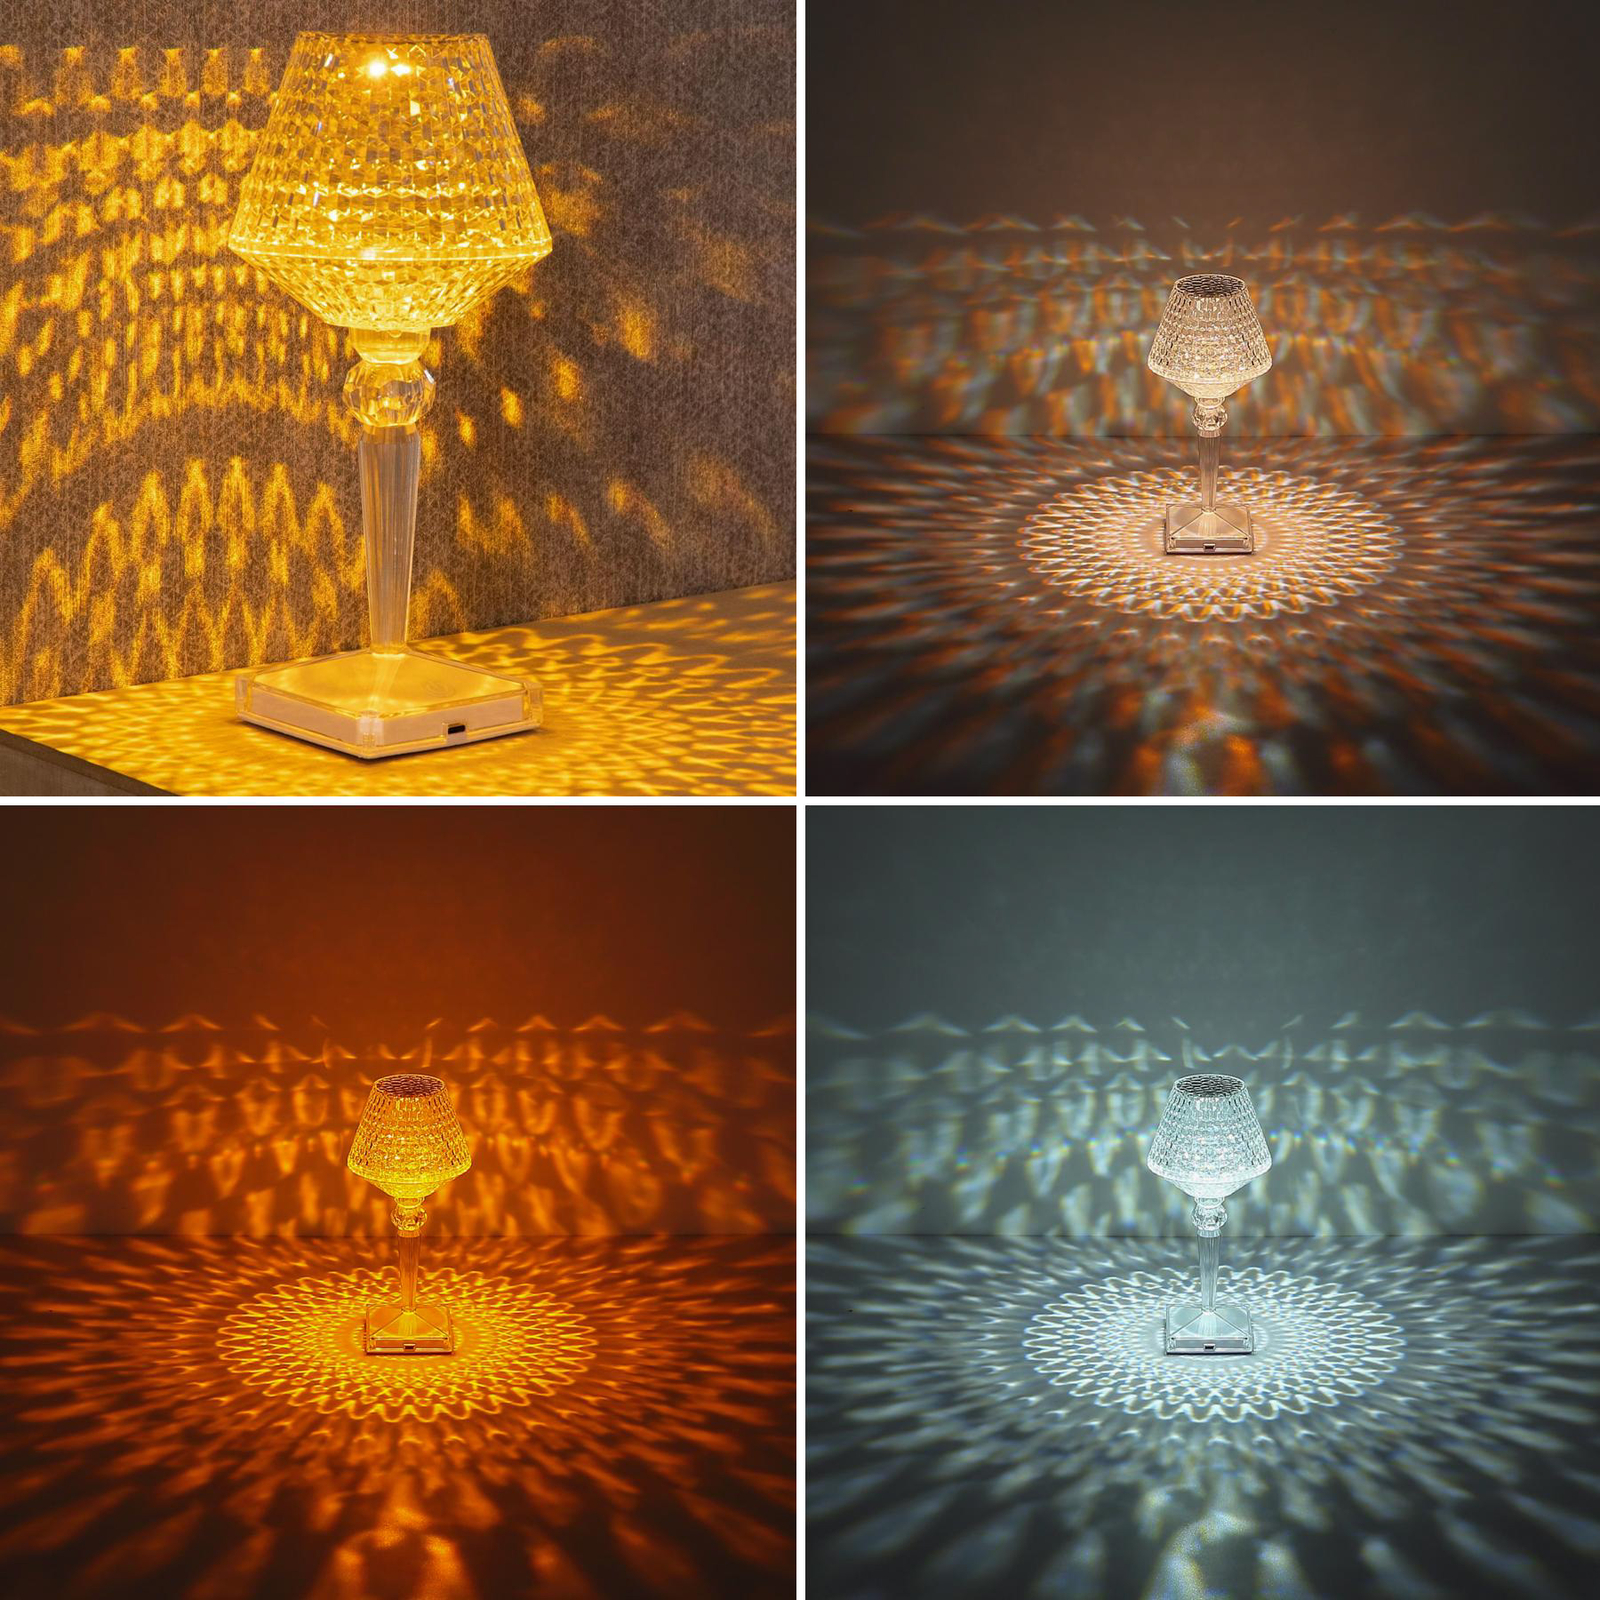 Lampe de table LED rechargeable Gixi, transparent/effet cristal, CCT